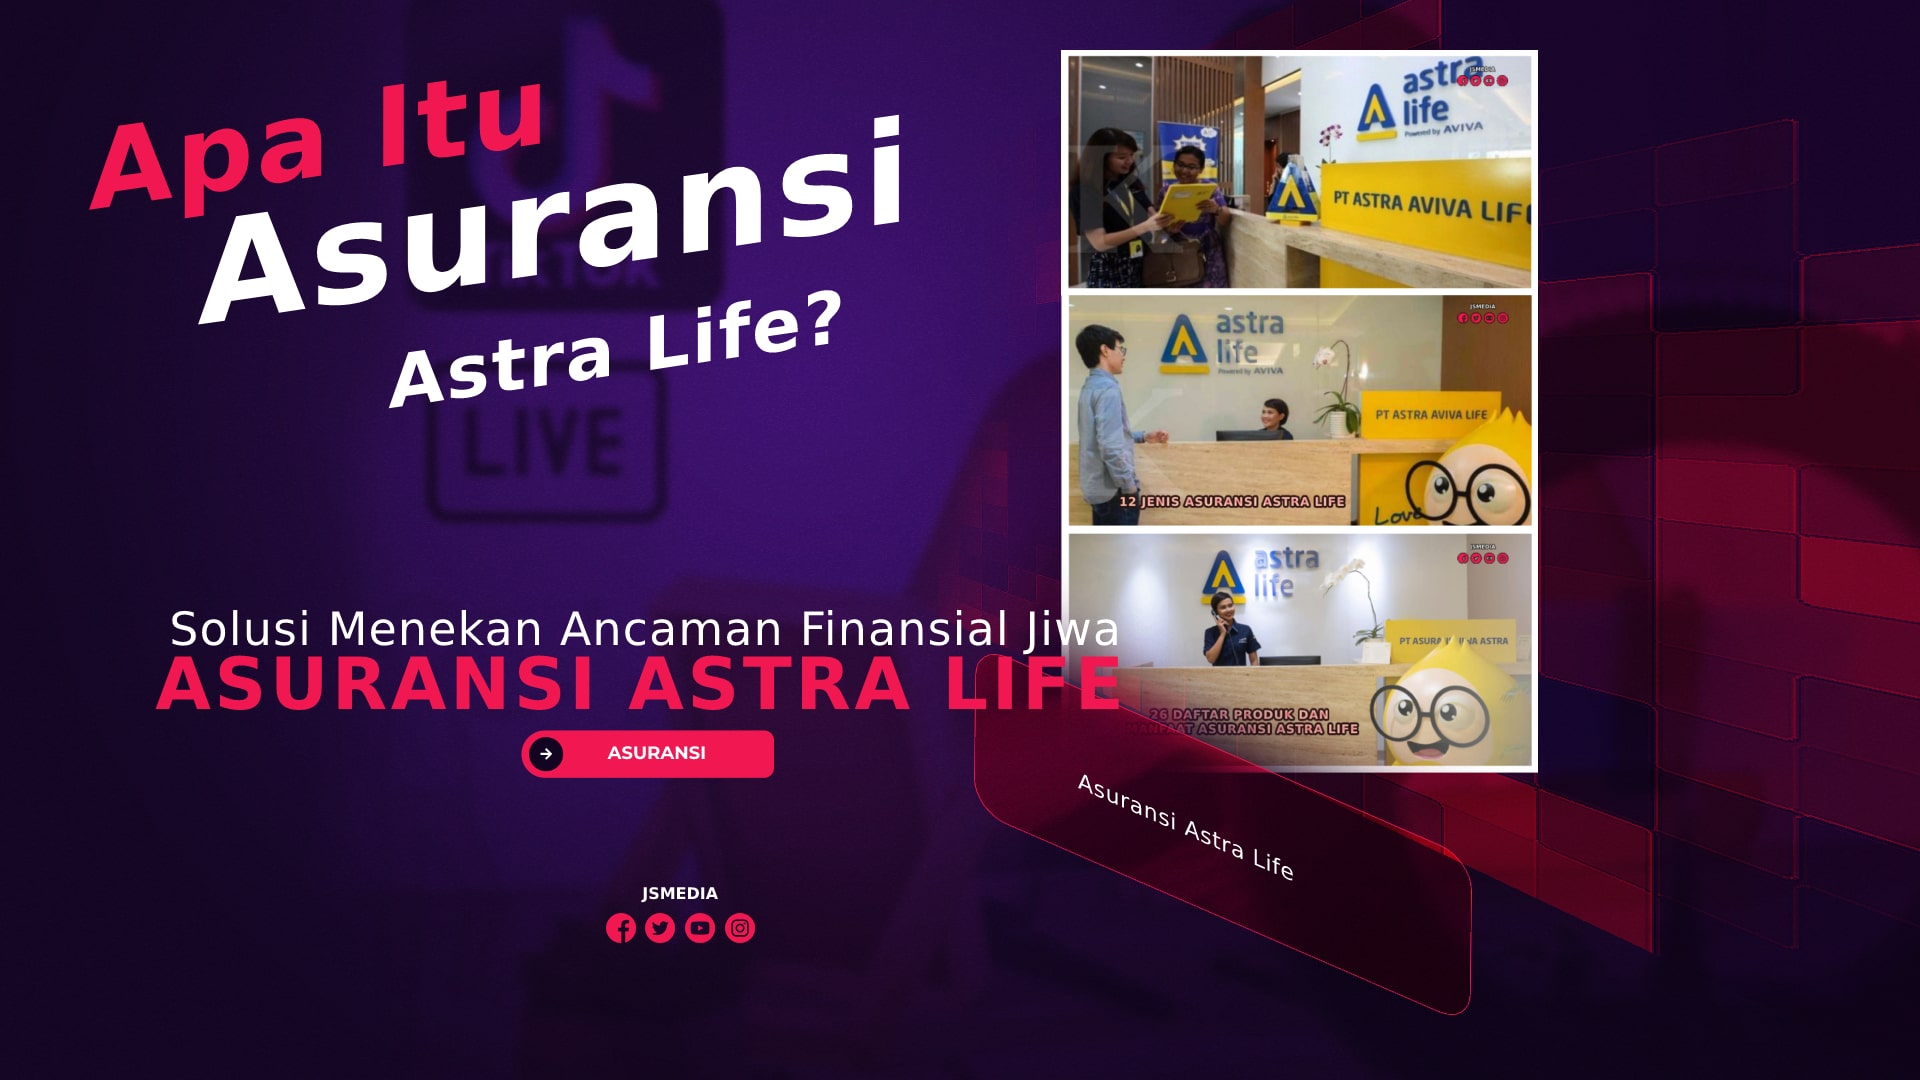 Asuransi Astra Life, Solusi Menekan Ancaman Finansial Jiwa